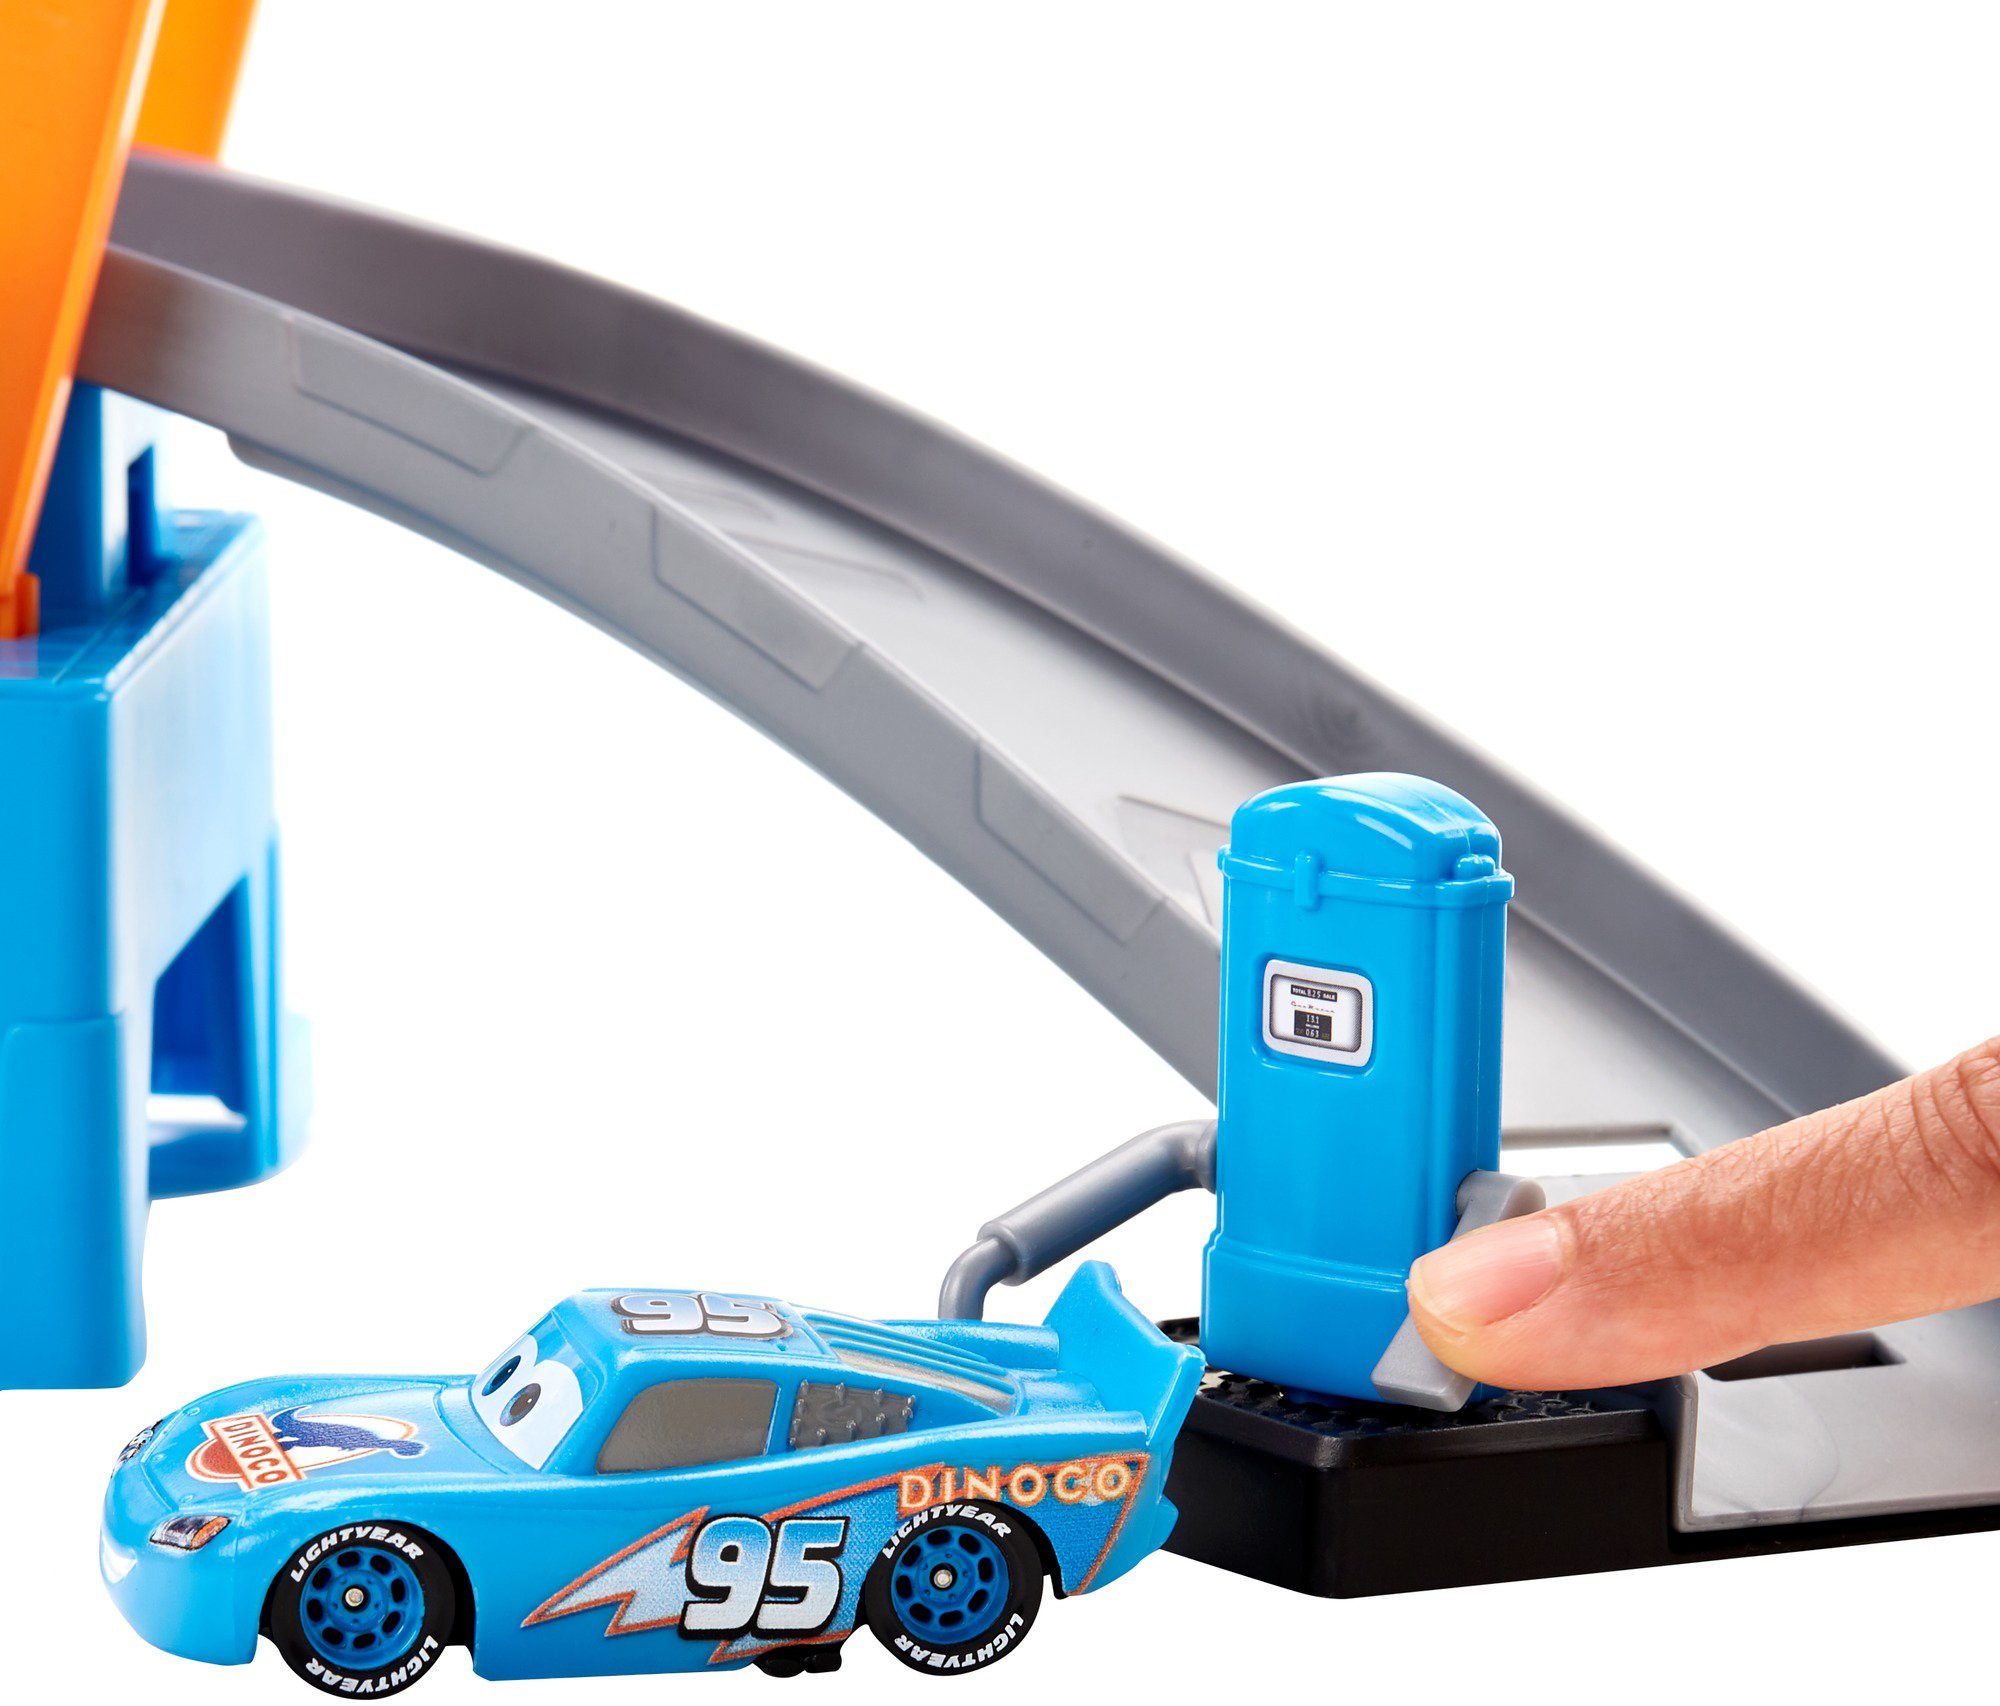 Farbwechseleffekt Disney Autowaschanlage, Dinoco inkl. Spiel-Gebäude Cars, Farbwechsel Mattel® Pixar mit Fahrzeug